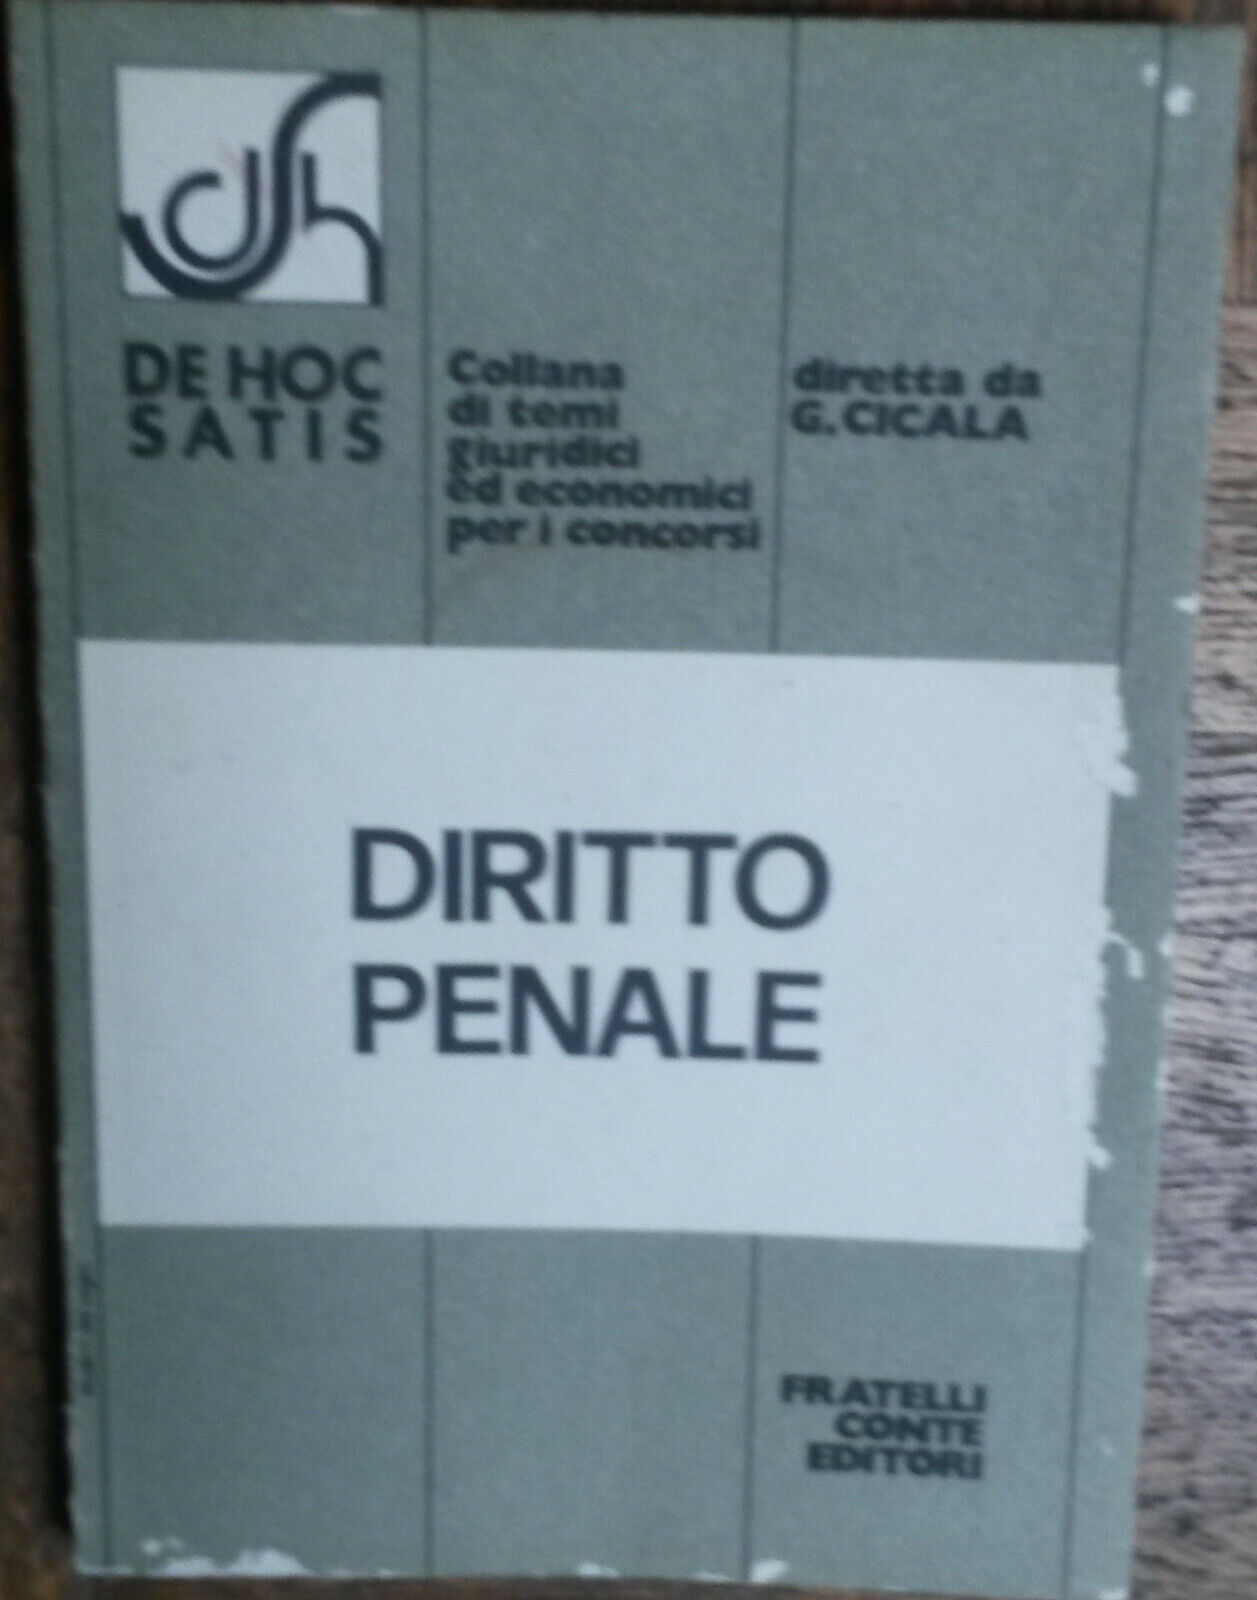 Diritto penale - Giuseppe Cicala - Fratelli Conte Editore,1975 - R